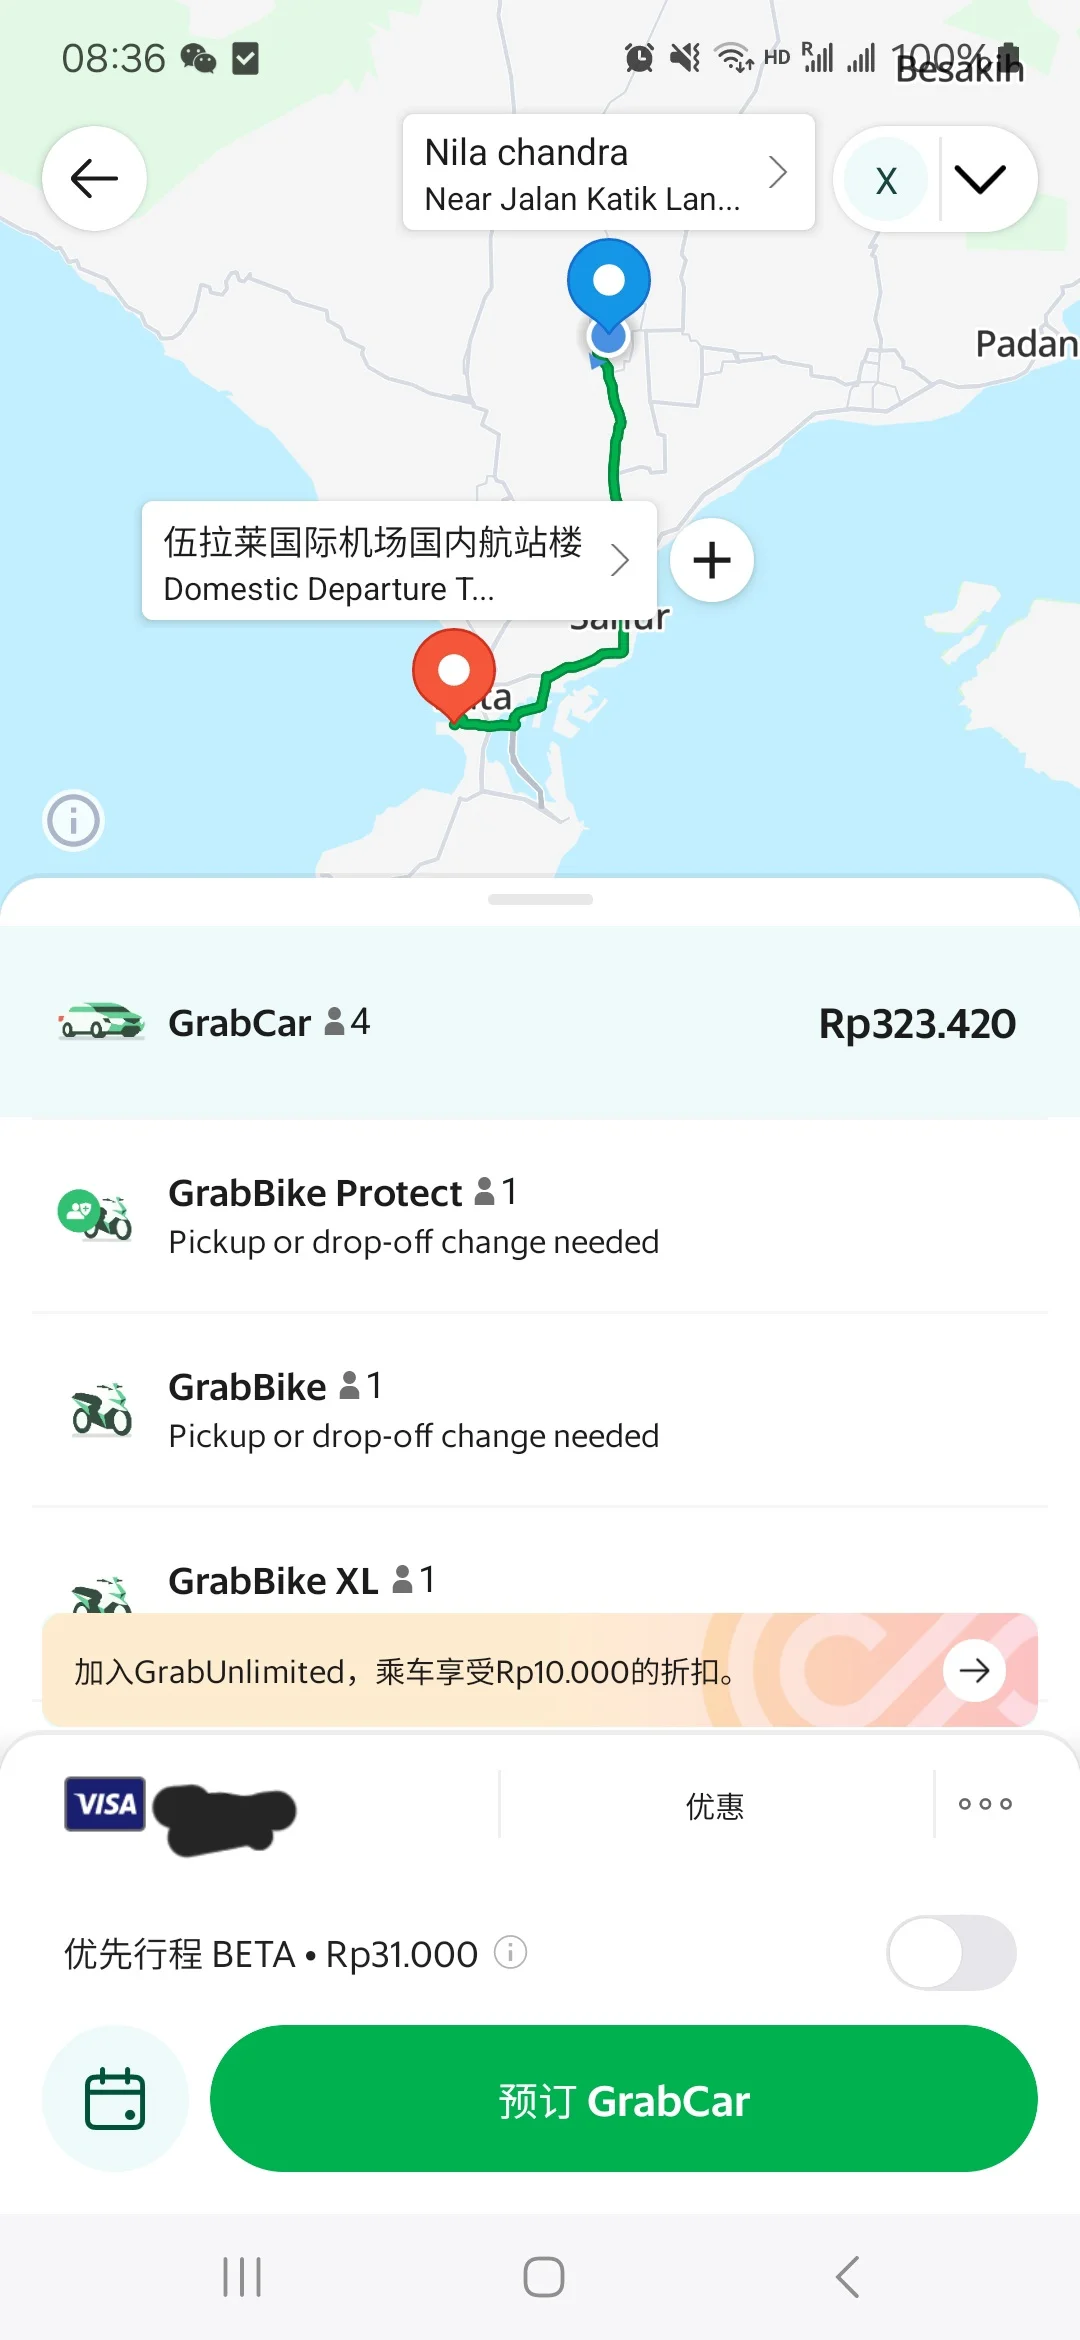 印尼当地的打车外卖软件 Gojek